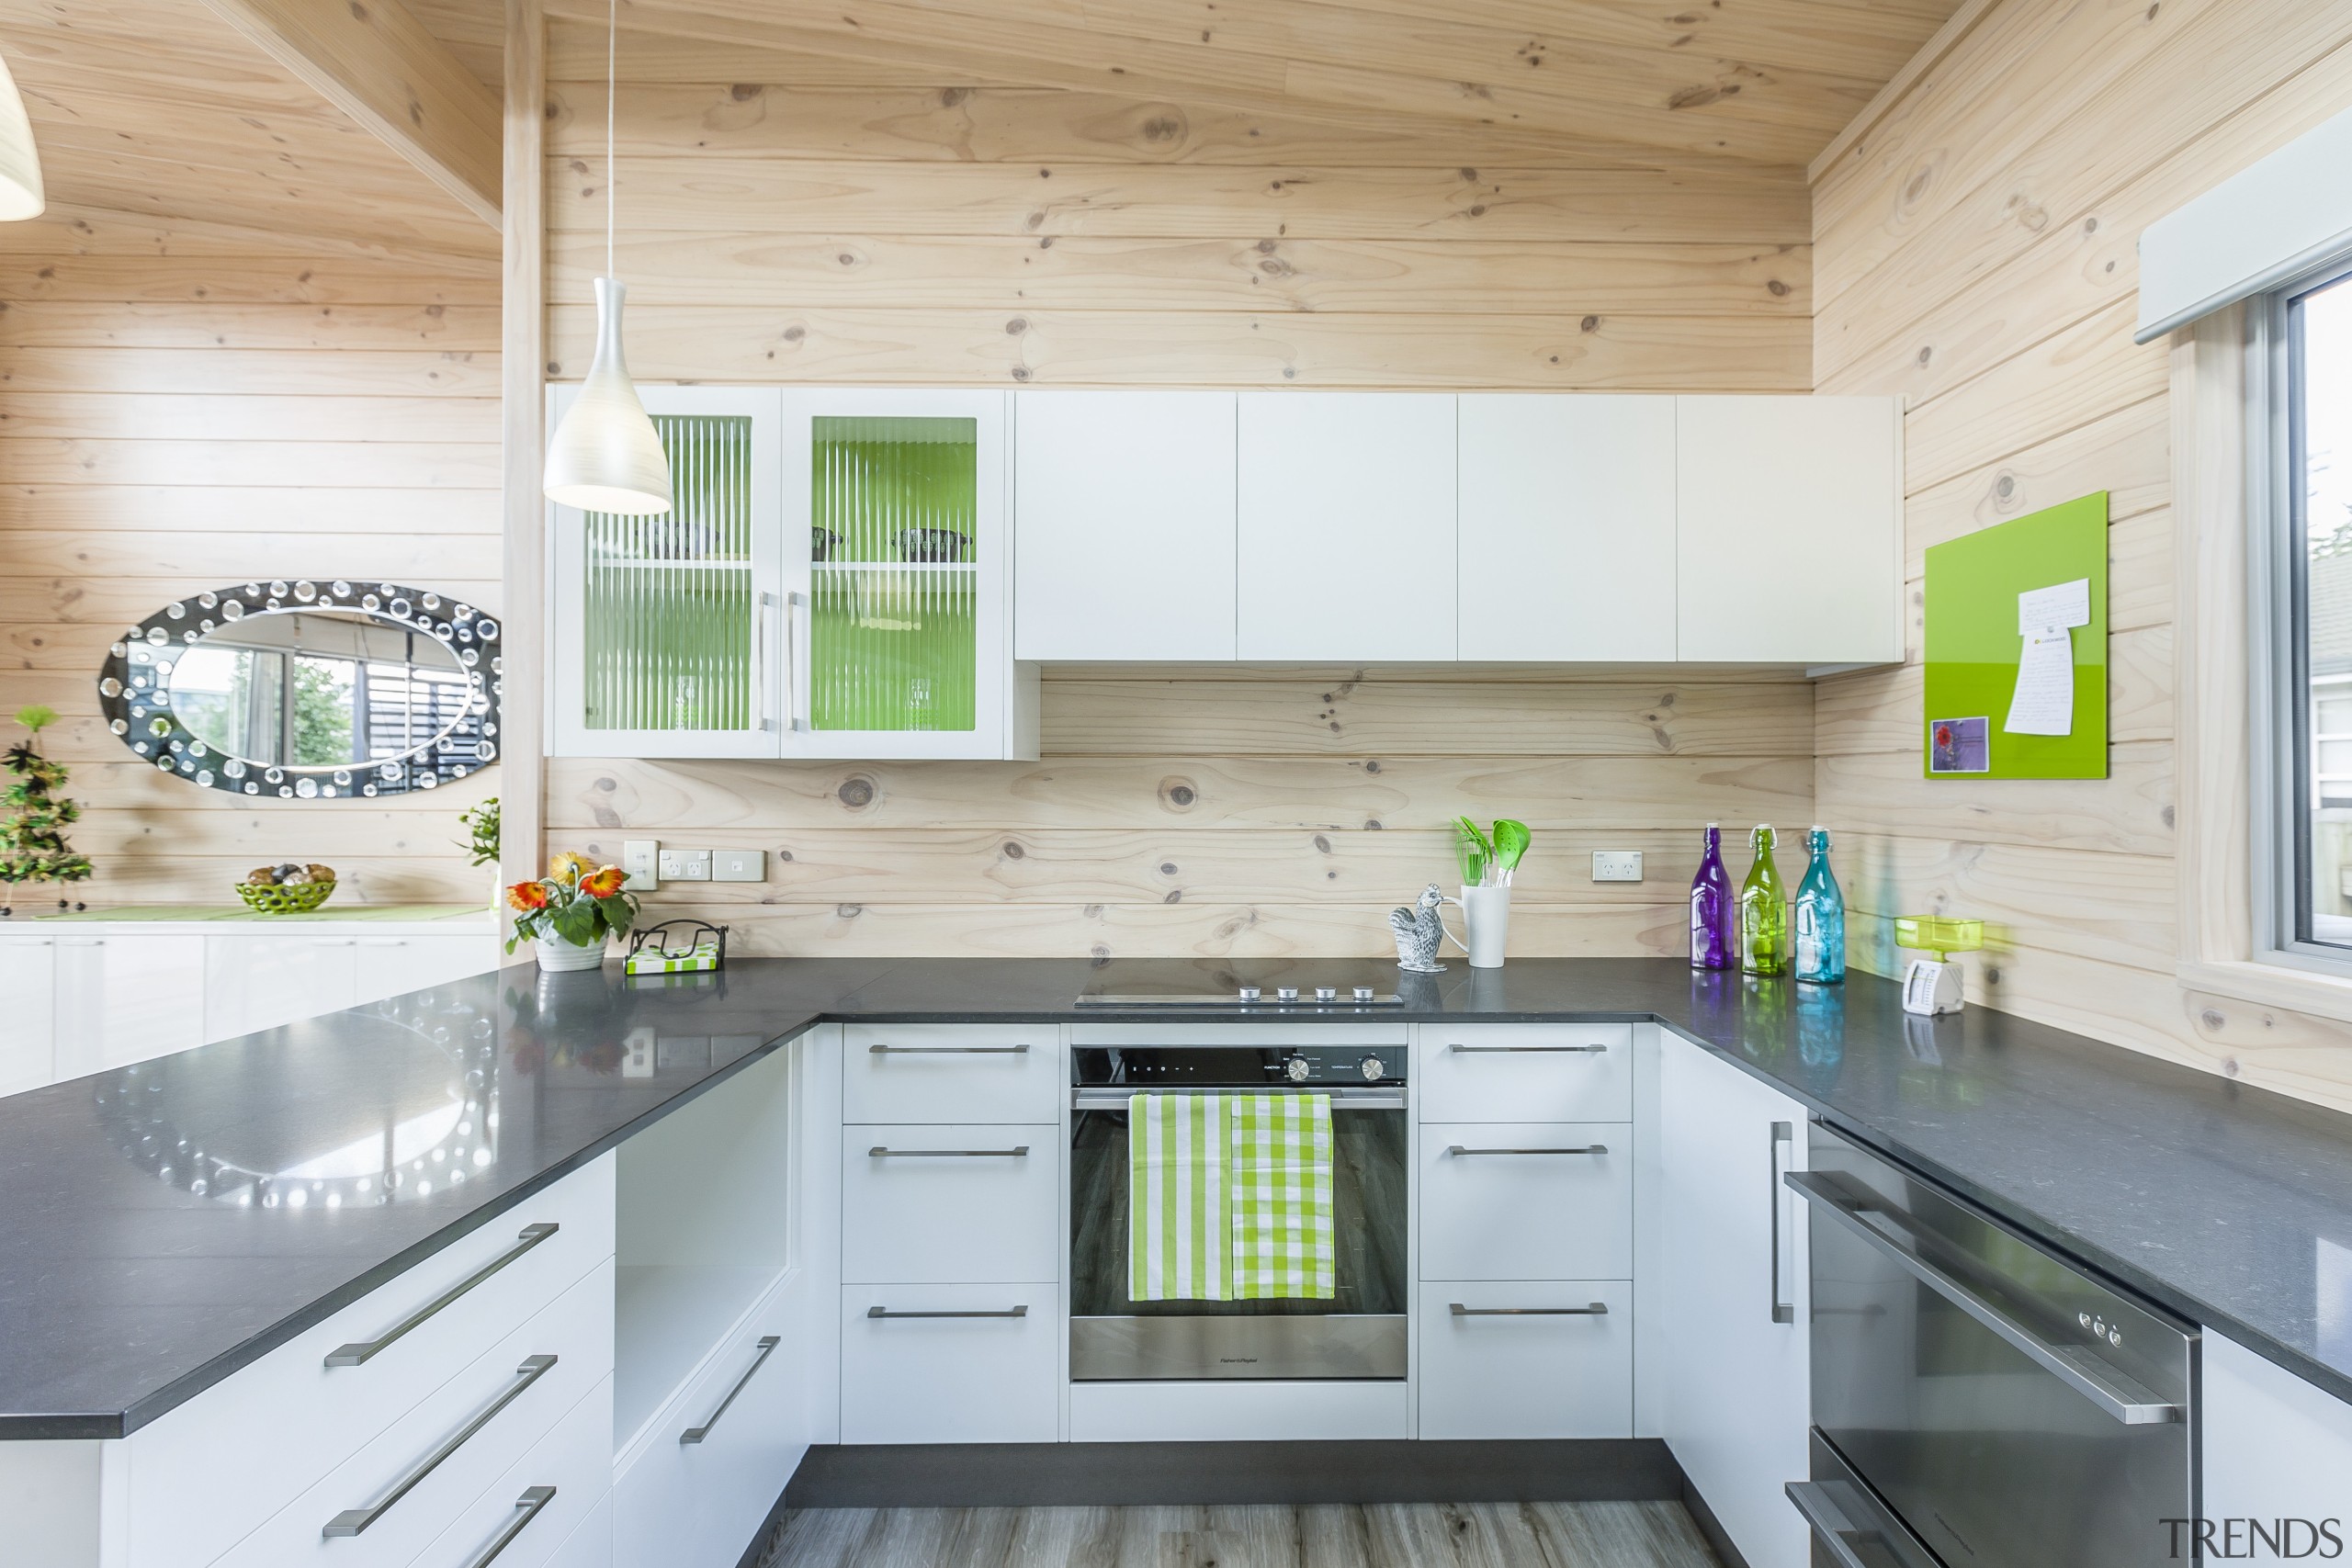 Skagen home kitchen - Skagen home kitchen - countertop, house, interior design, kitchen, real estate, white